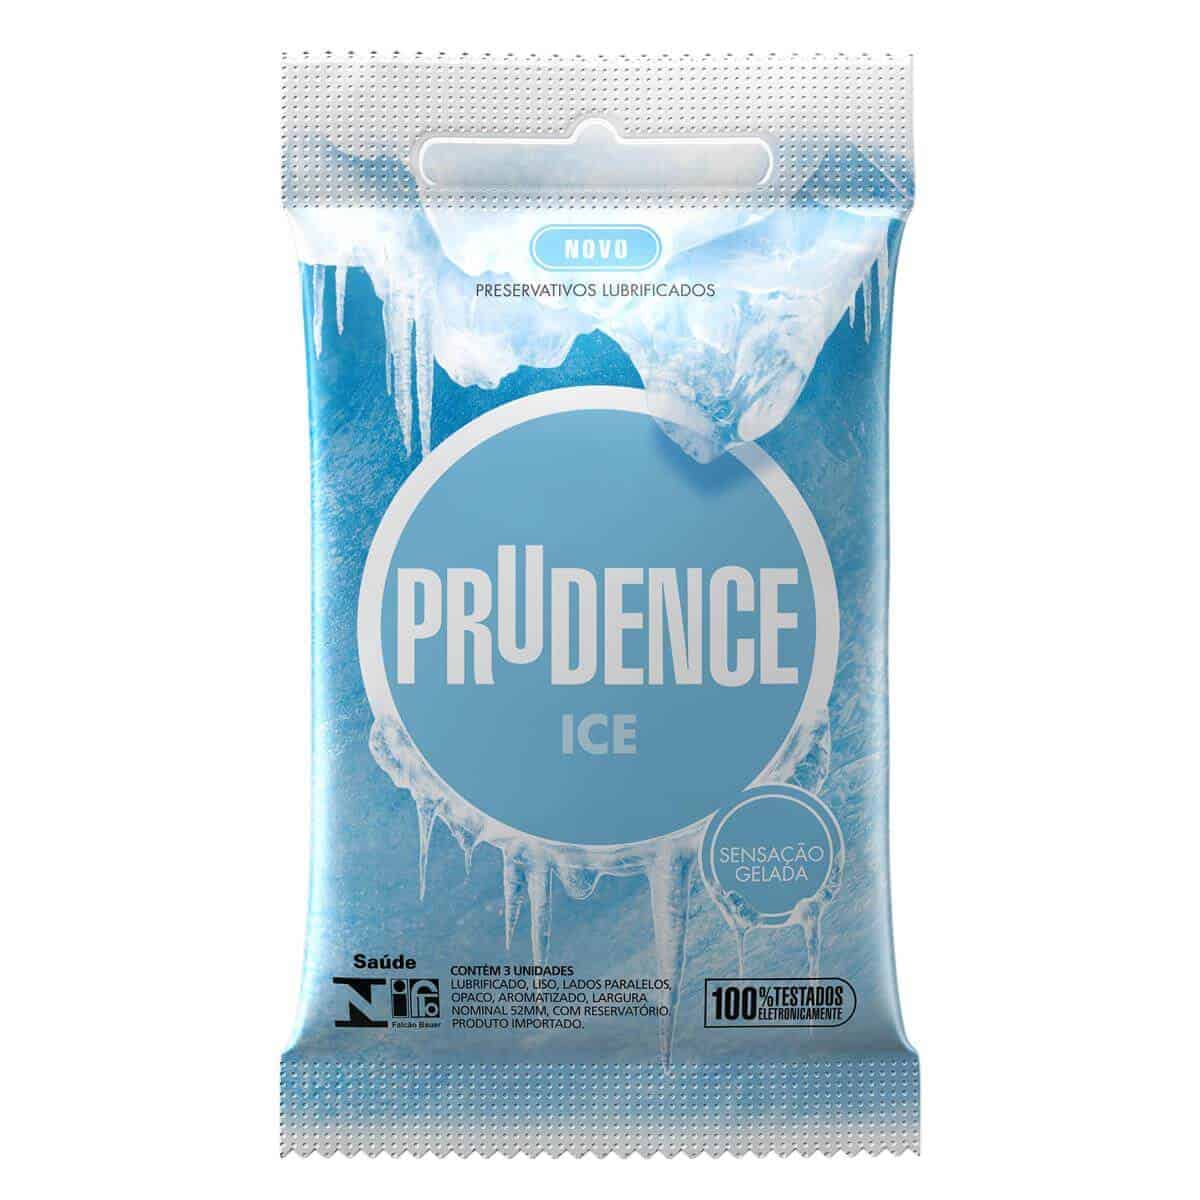 Preservativo-ice-prudence